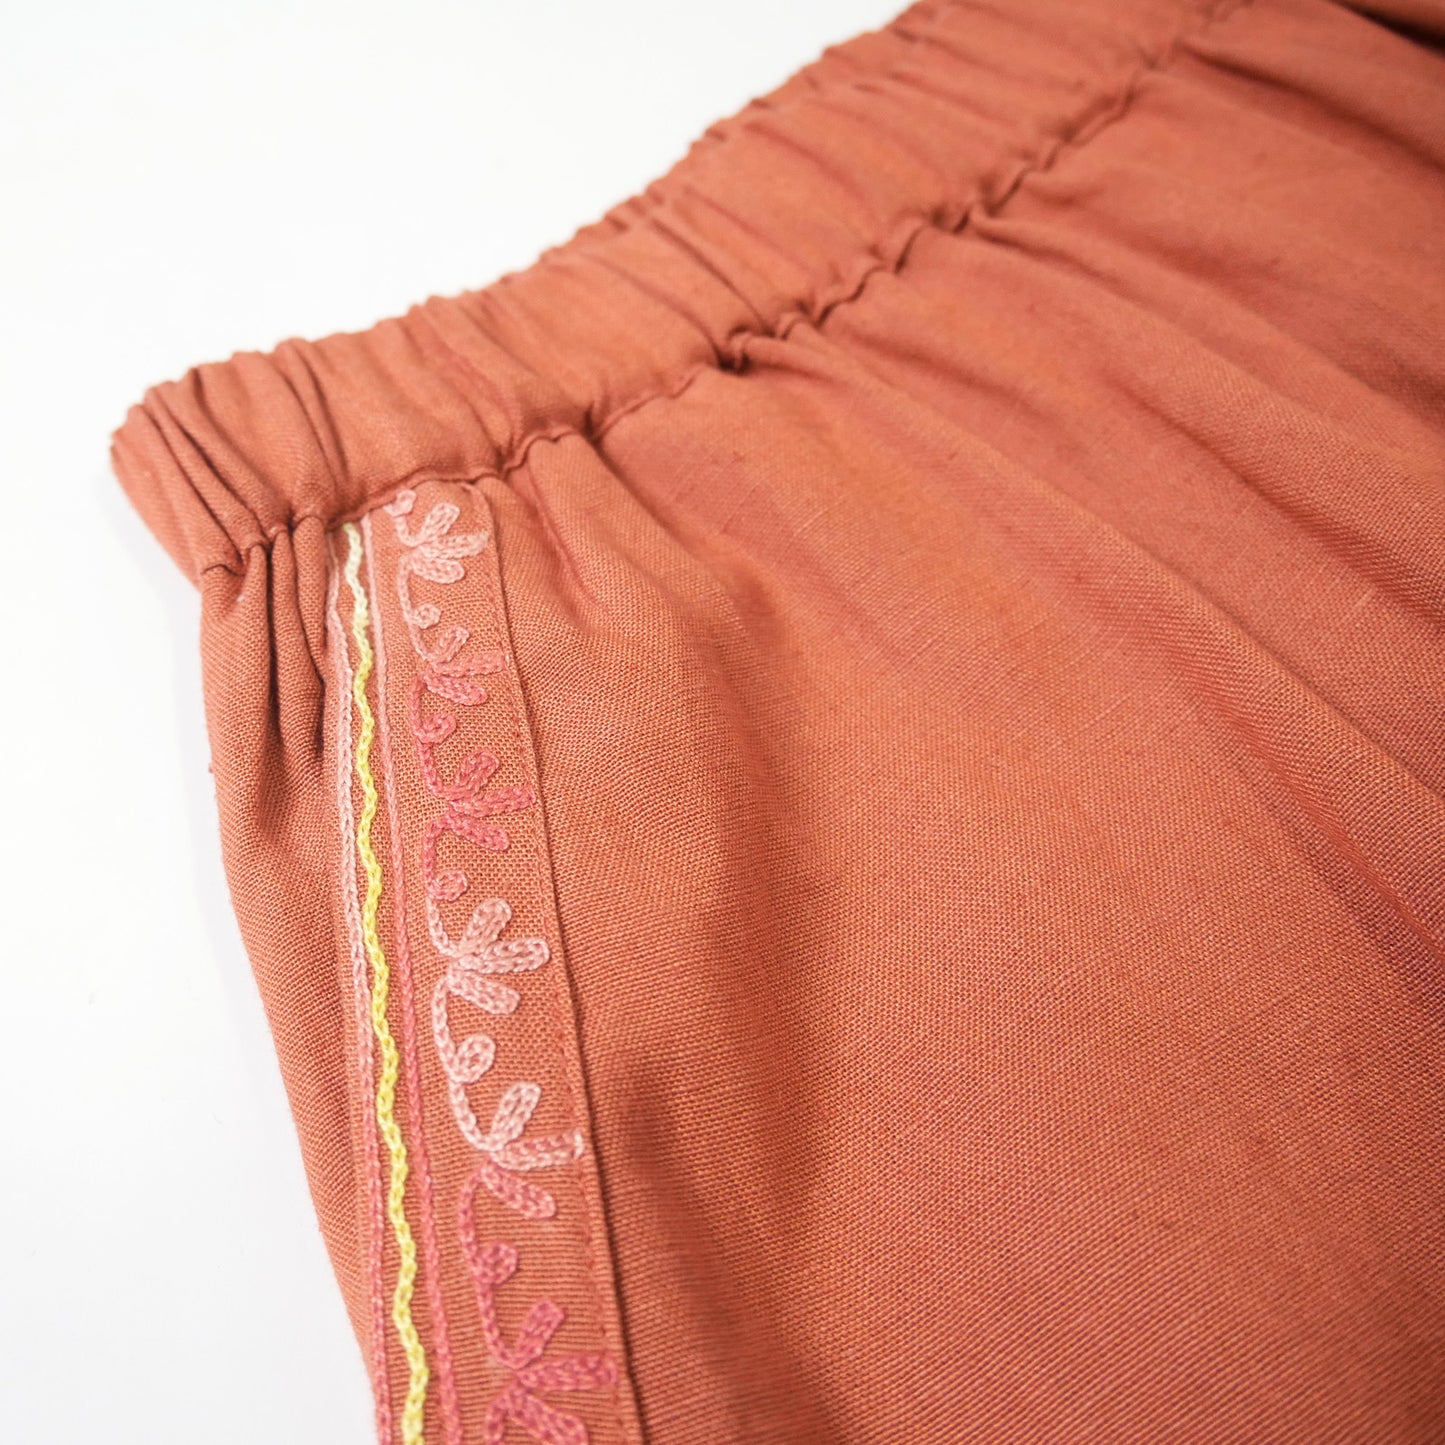 Pantaloni con ricamo Aari in lino Rayon